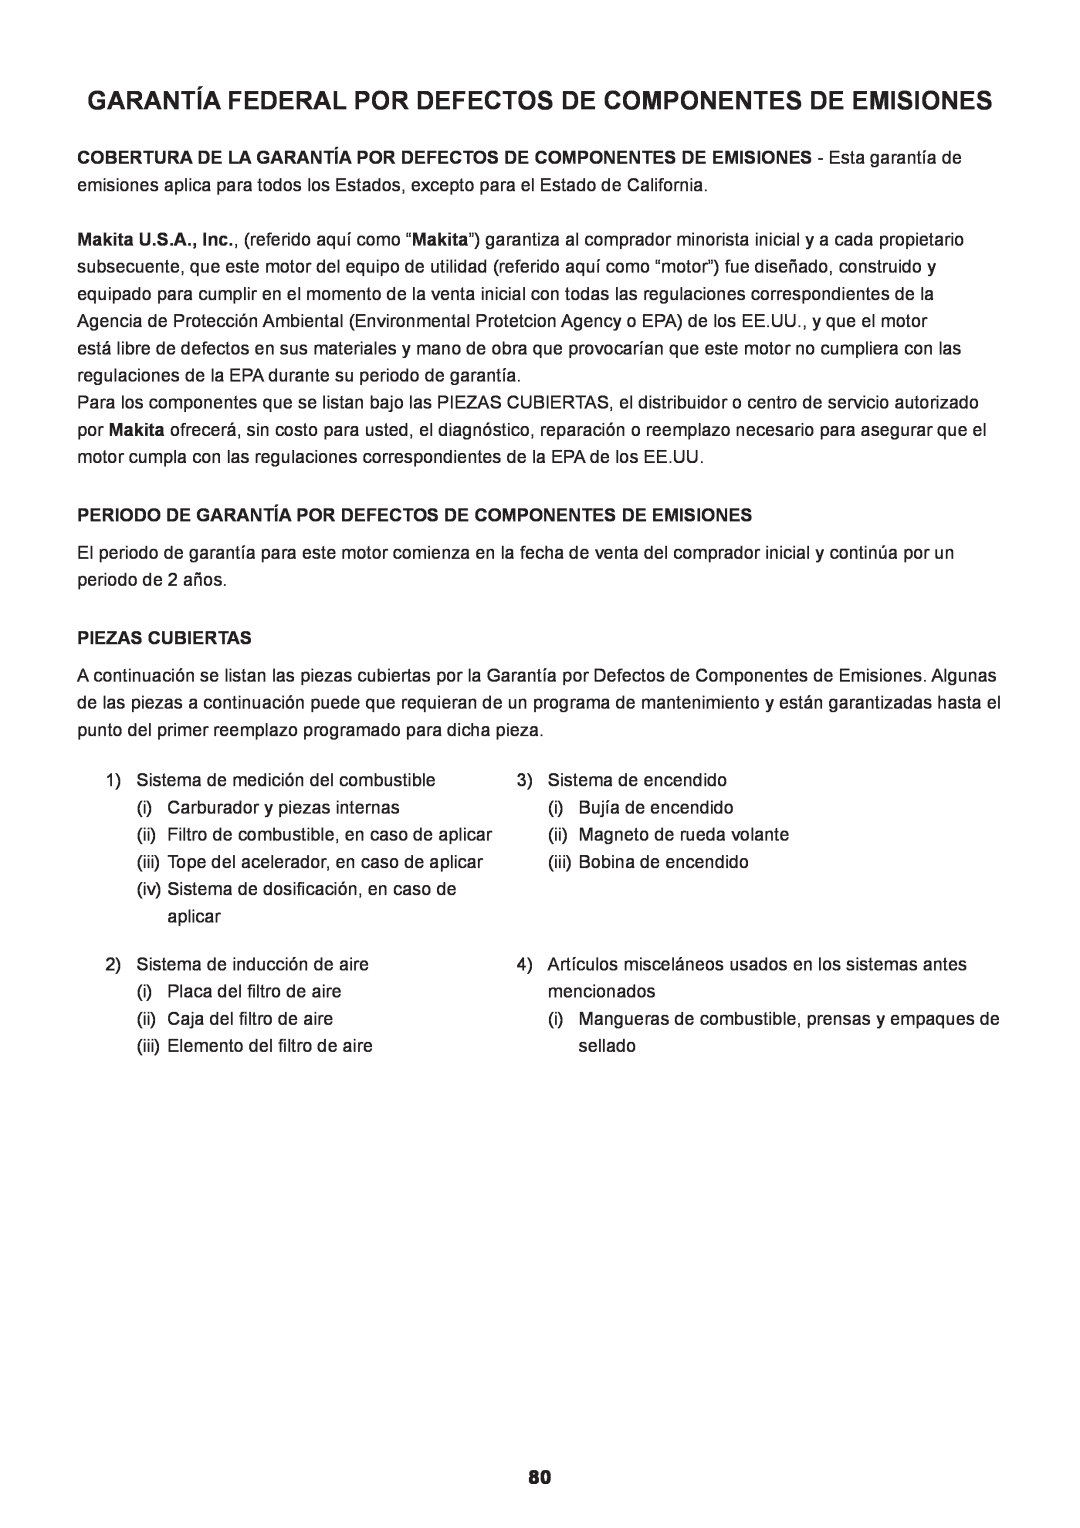 Makita EM2650LH, EM2650UH manual Garantía Federal Por Defectos De Componentes De Emisiones, Piezas Cubiertas 